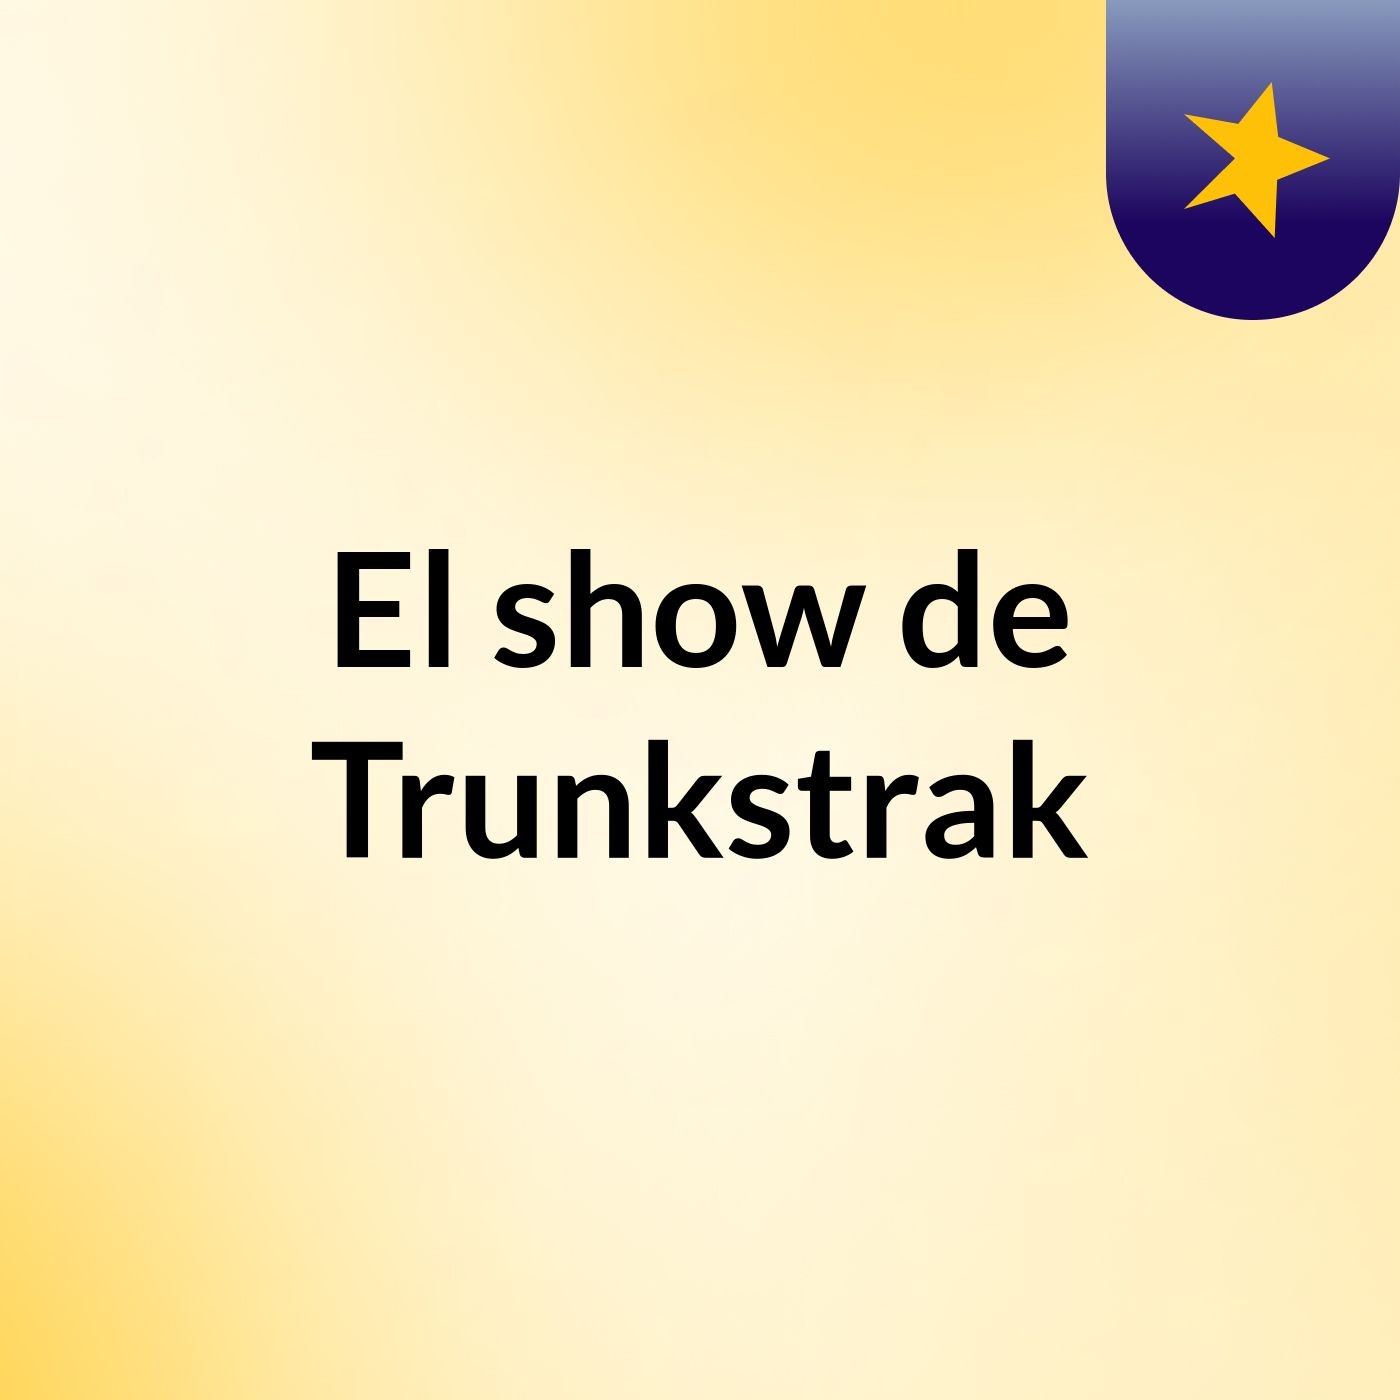 El show de Trunkstrak